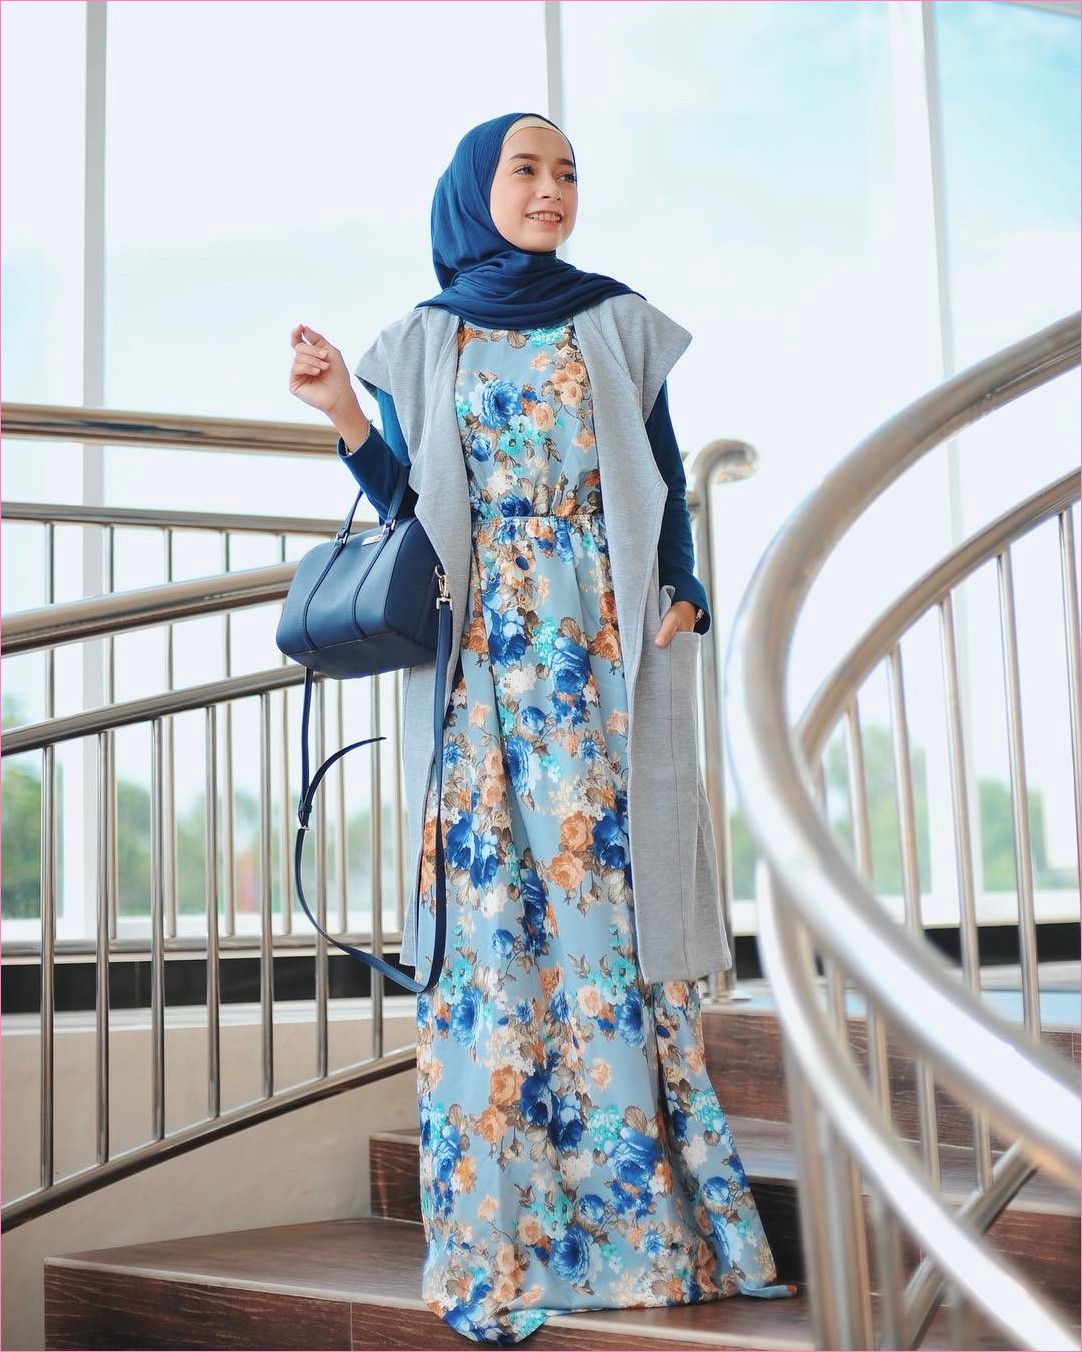 Model Baju Gamis Batik Kombinasi Sifon